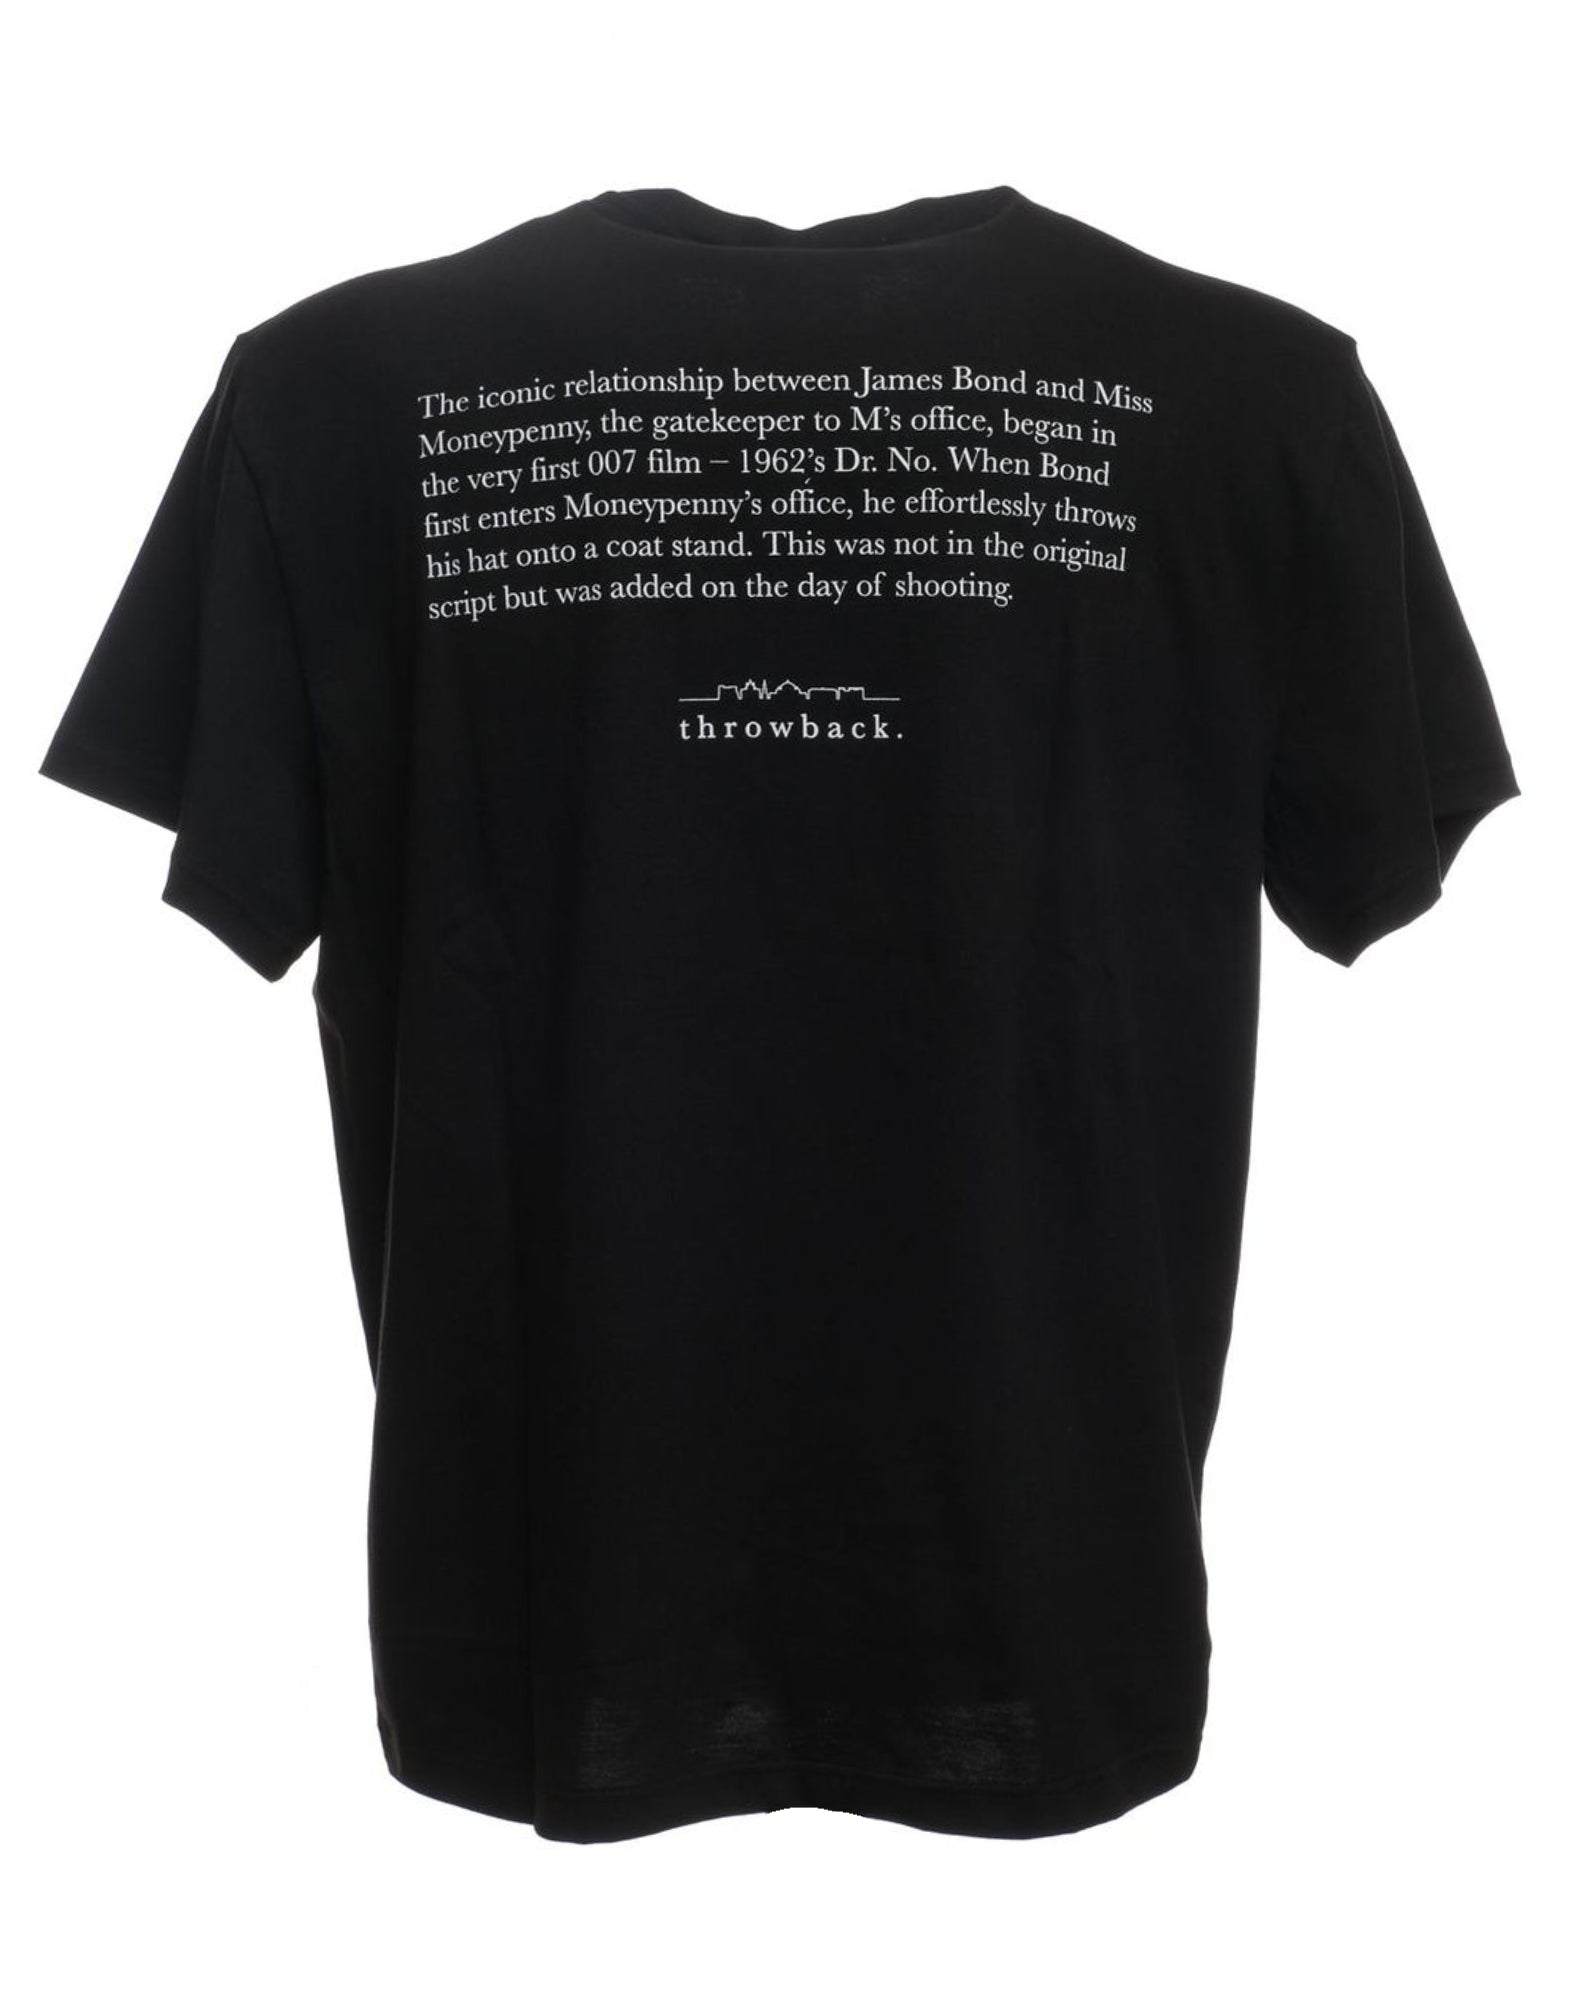 T-shirt pour l'homme plat THROWBACK